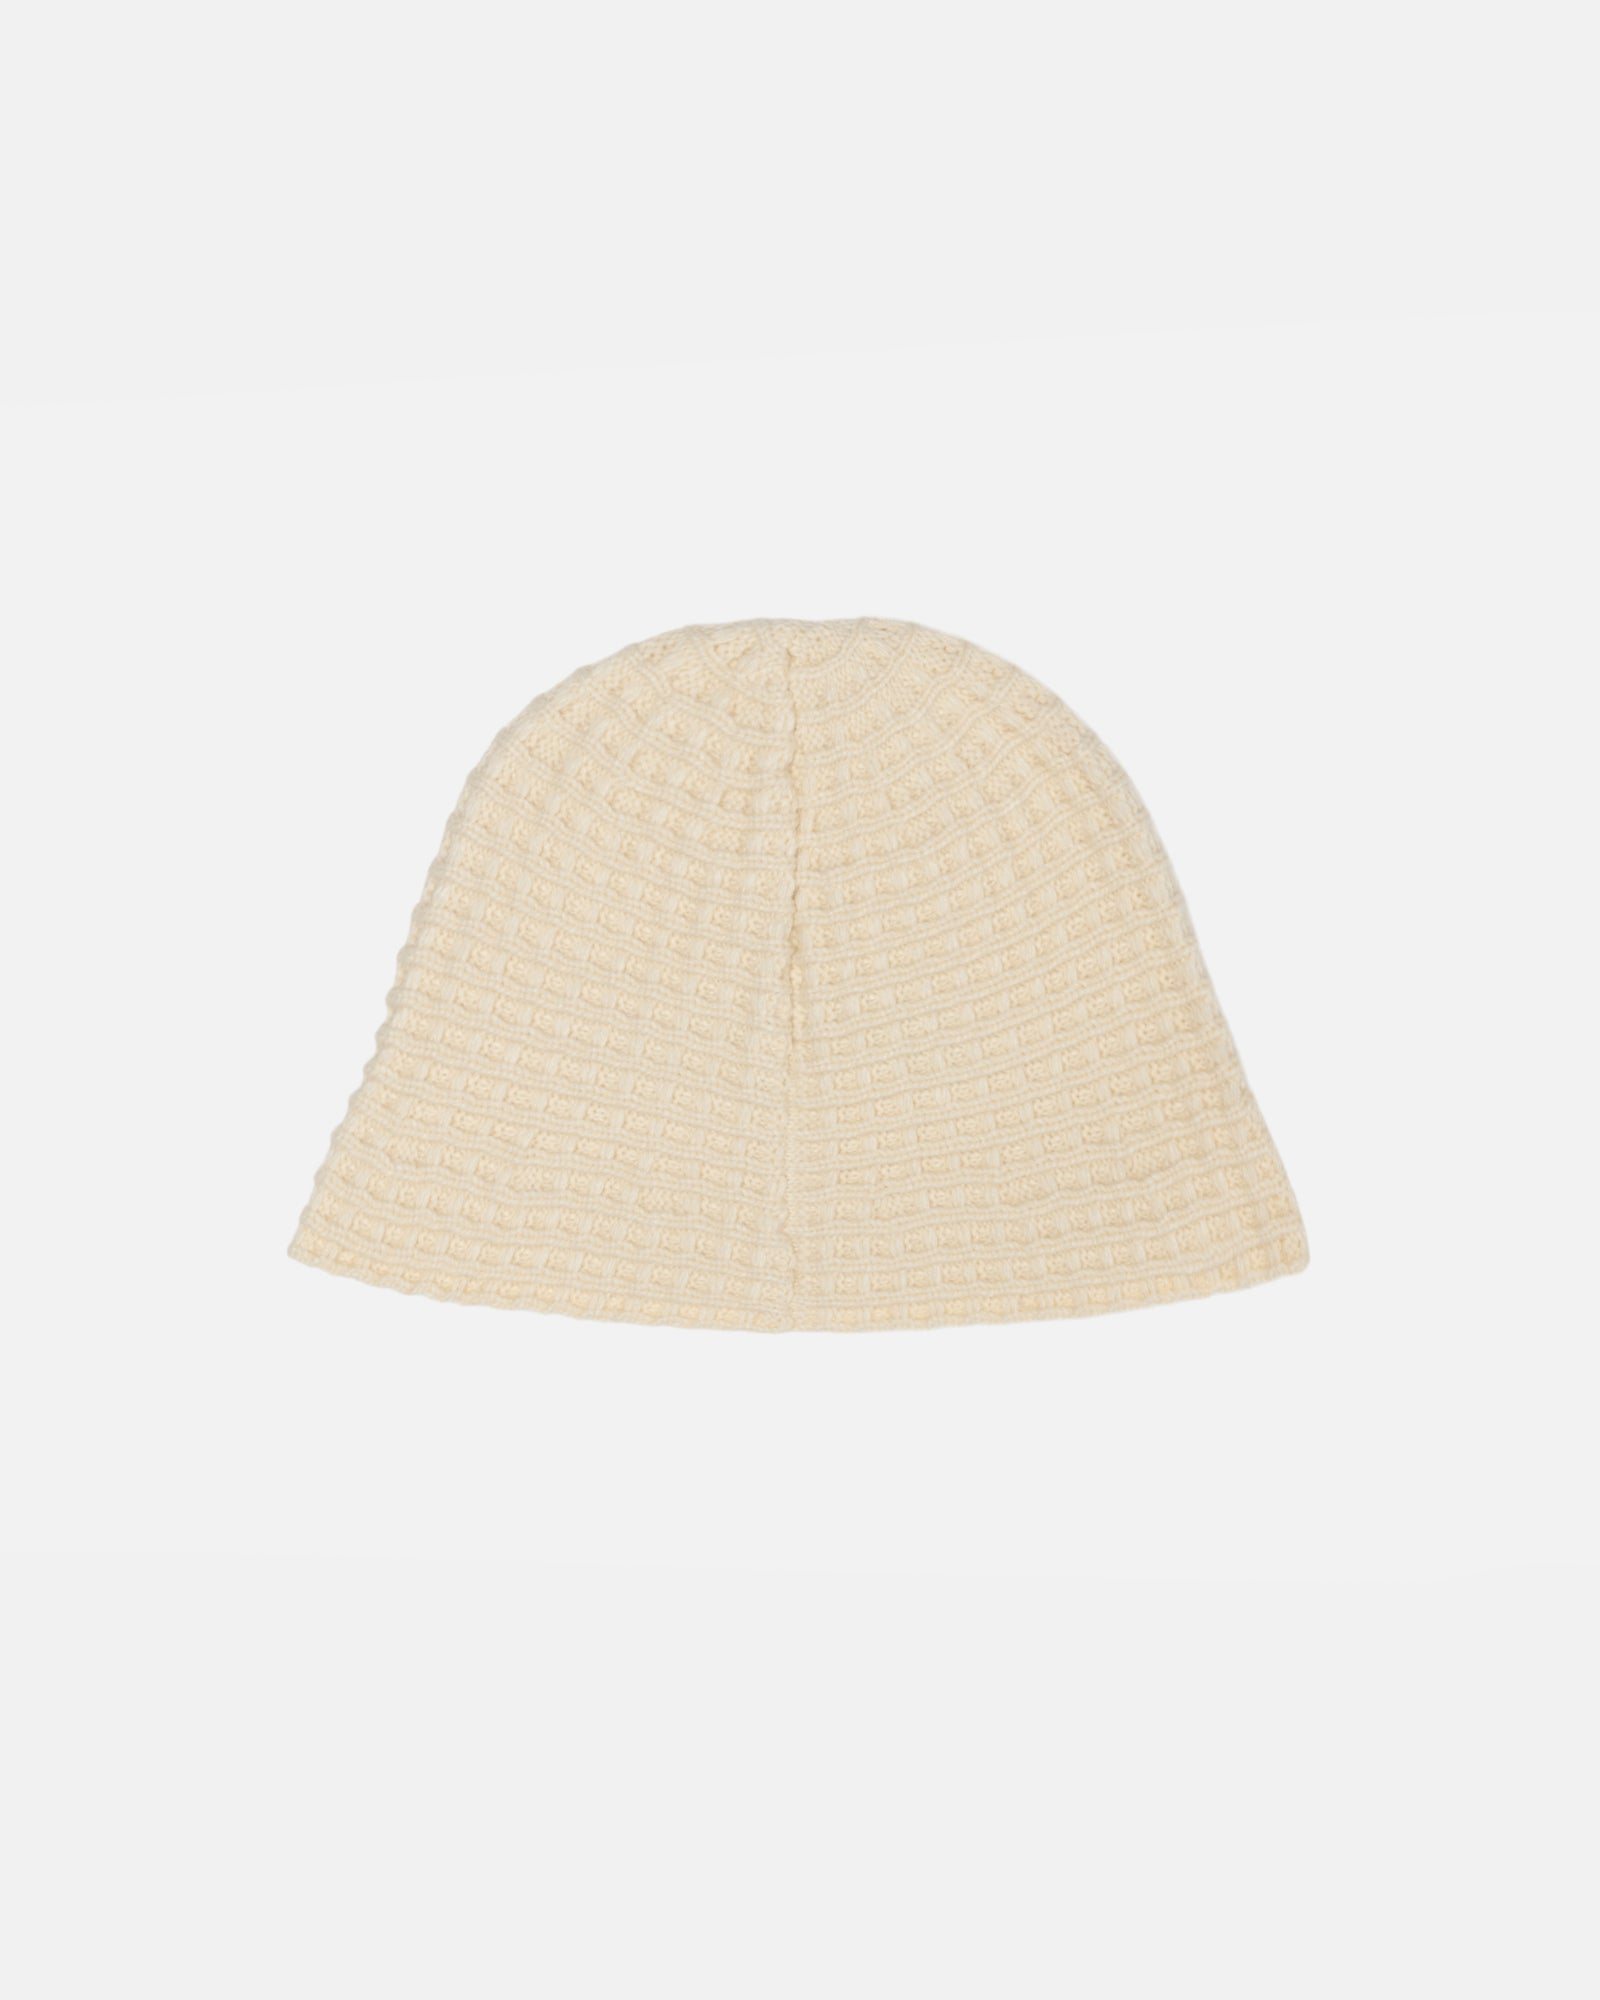 Headwear: Bucket Hats by Stüssy